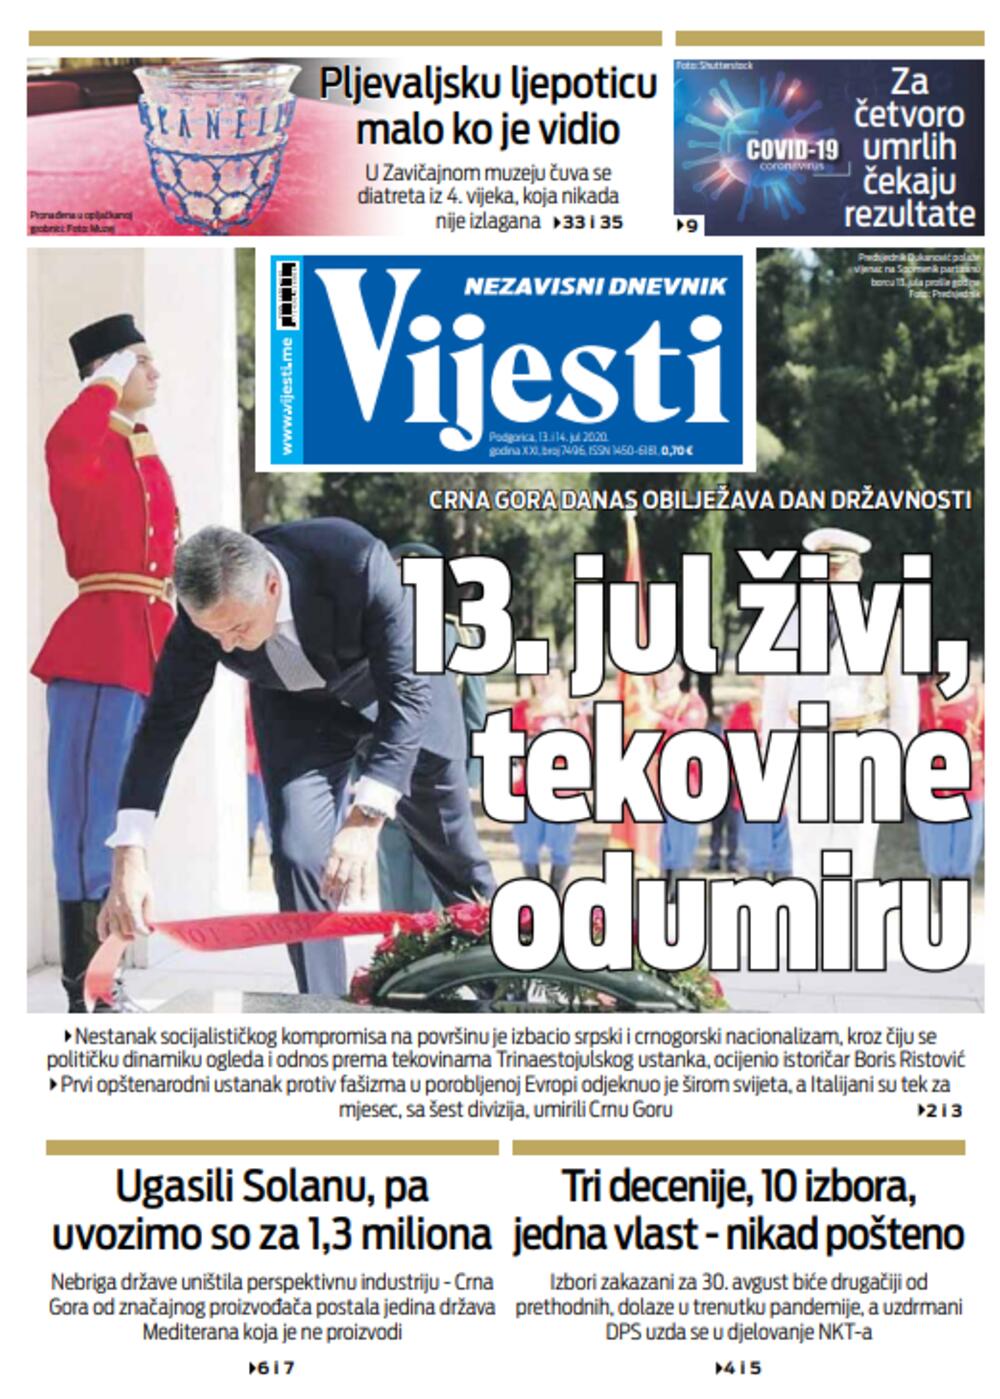 Naslovna strana "Vijesti" za 13. i 14. jul, Foto: Vijesti